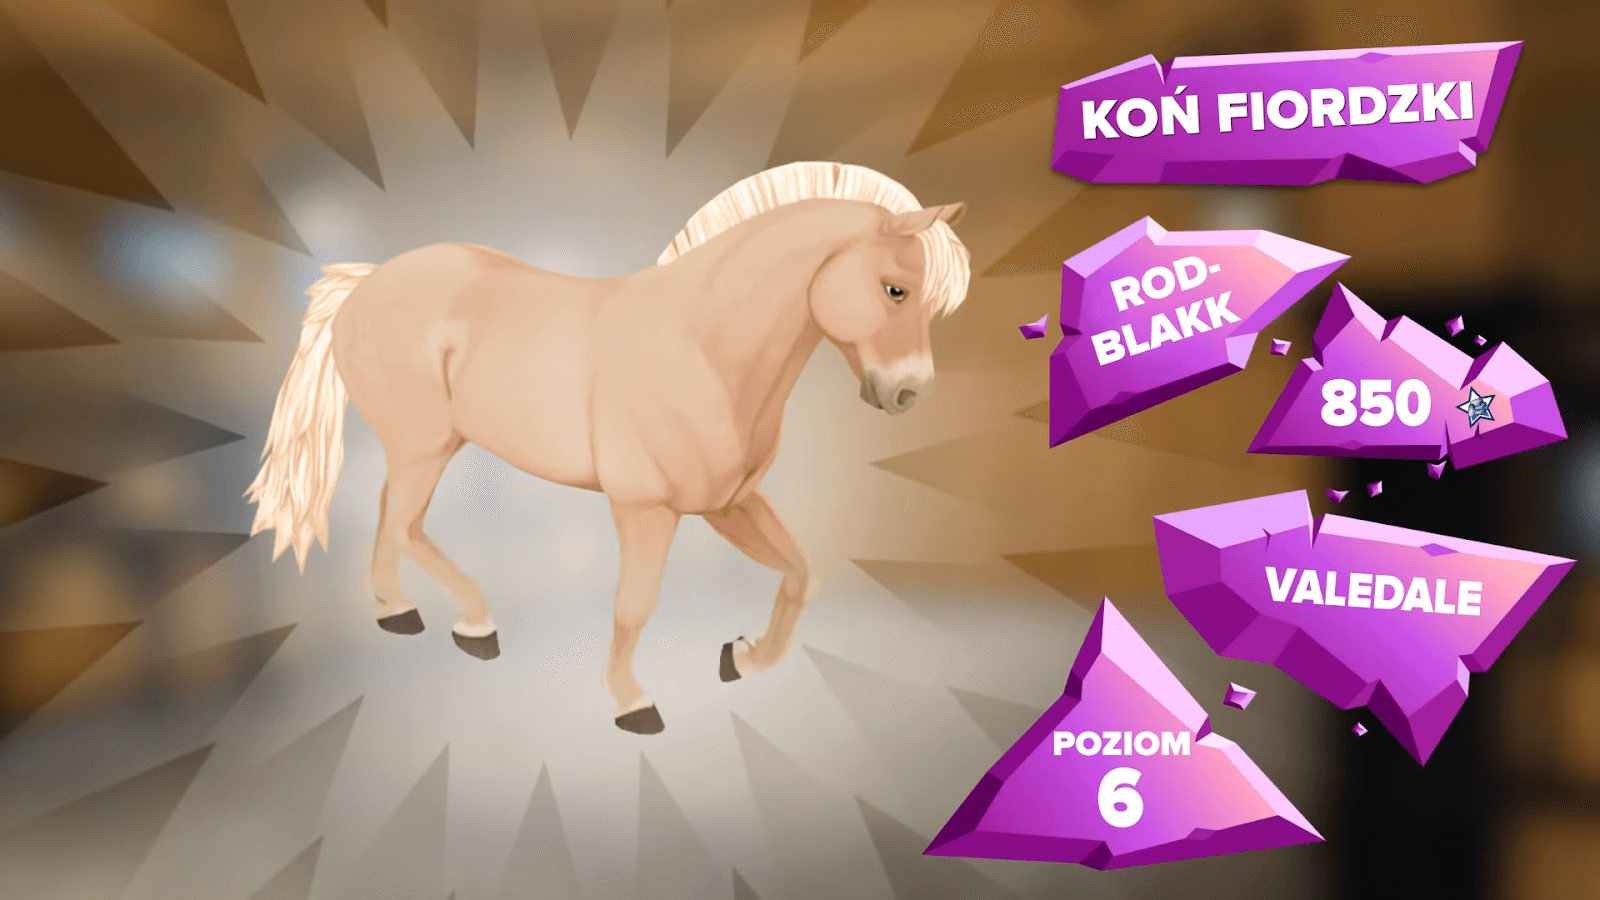 Koń fiordzki sso - ROD BLAKK od poziomu 6 